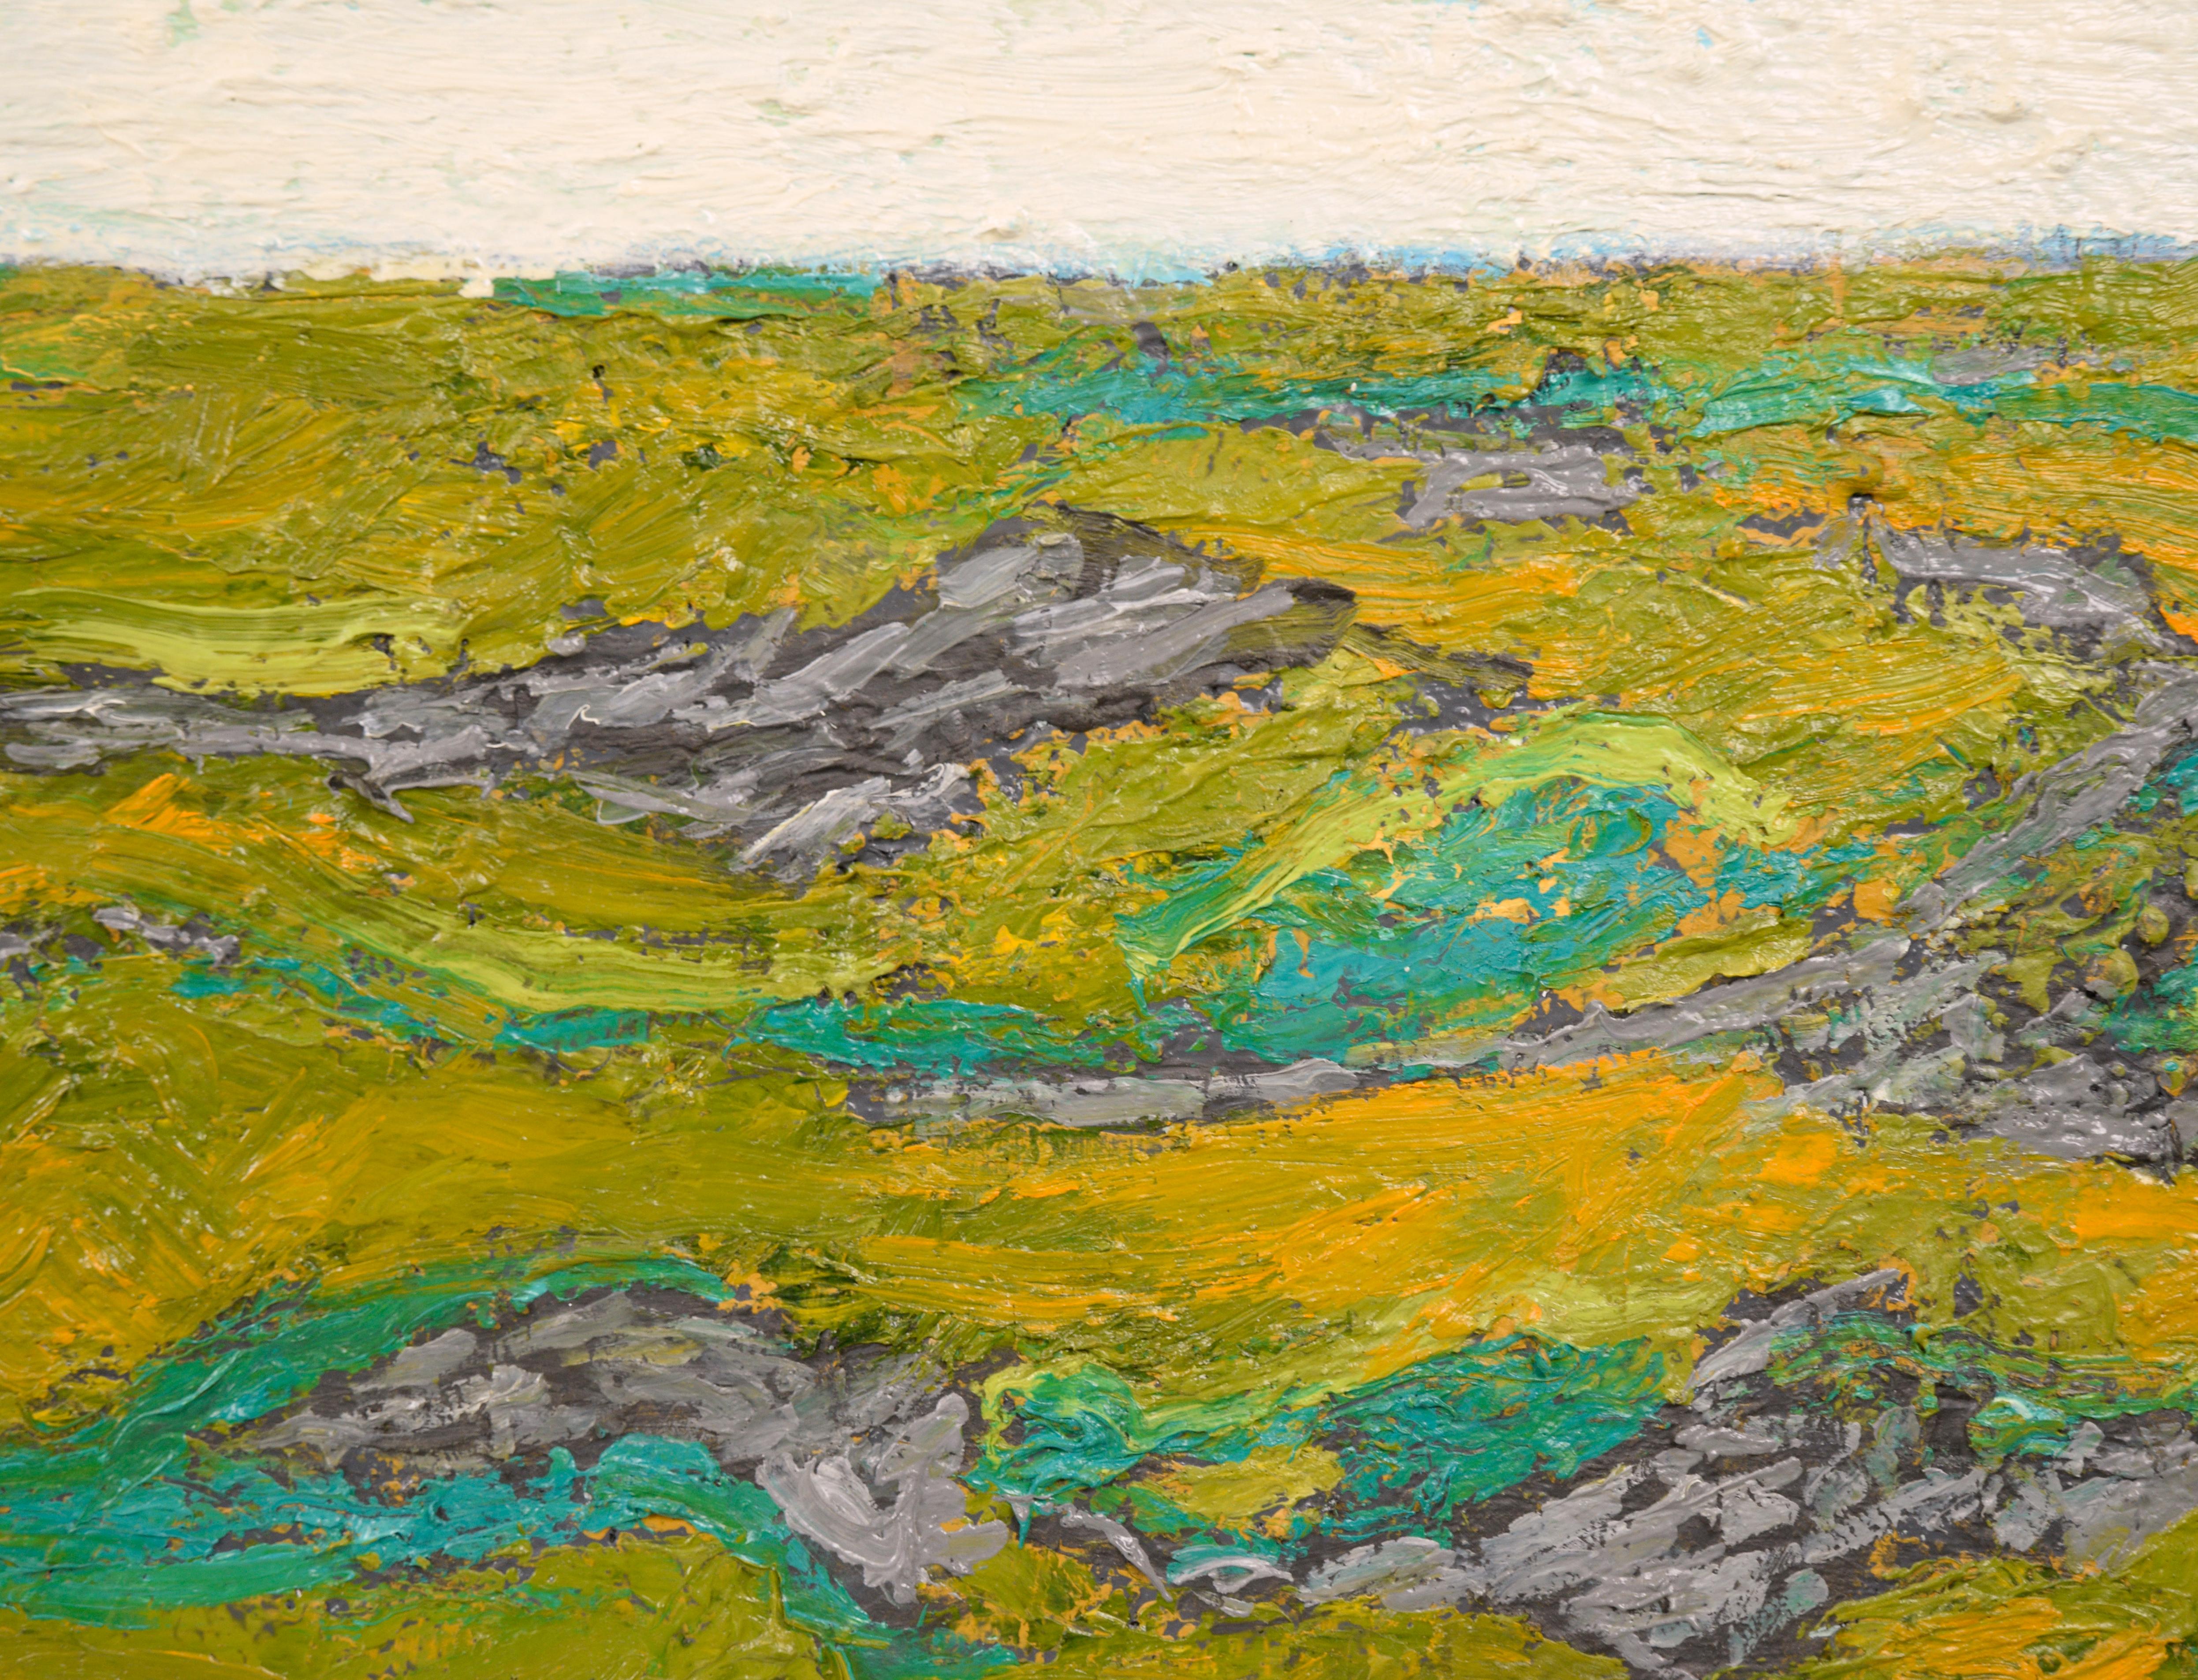 Ein auffälliges, zeitgenössisches, zweifarbiges, abstraktes Bild des Bay Area Künstlers Michael Pauker (Amerikaner, geb. 1957). Ein großer neutral strukturierter Abschnitt in Creme liegt auf einer wellenförmigen Abstraktion in verschiedenen